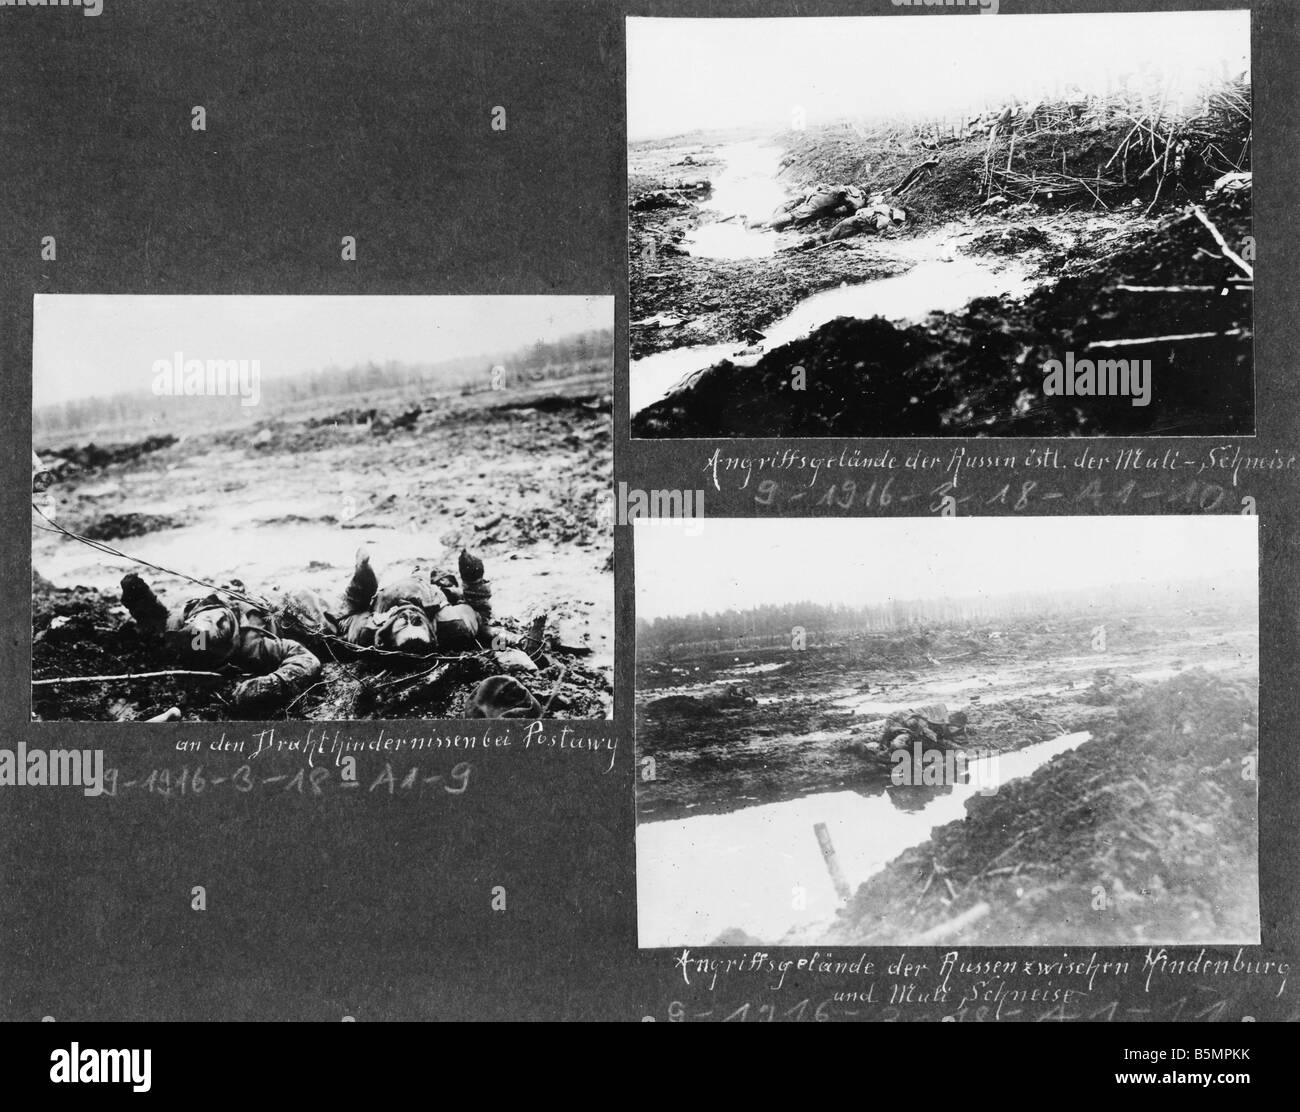 9 1916 3 18 A1 16 e Battaglia di Postawy 1916 campo di battaglia Guerra Mondiale 1 anteriore orientale sconfitta delle truppe russe dopo un offen sive o Foto Stock